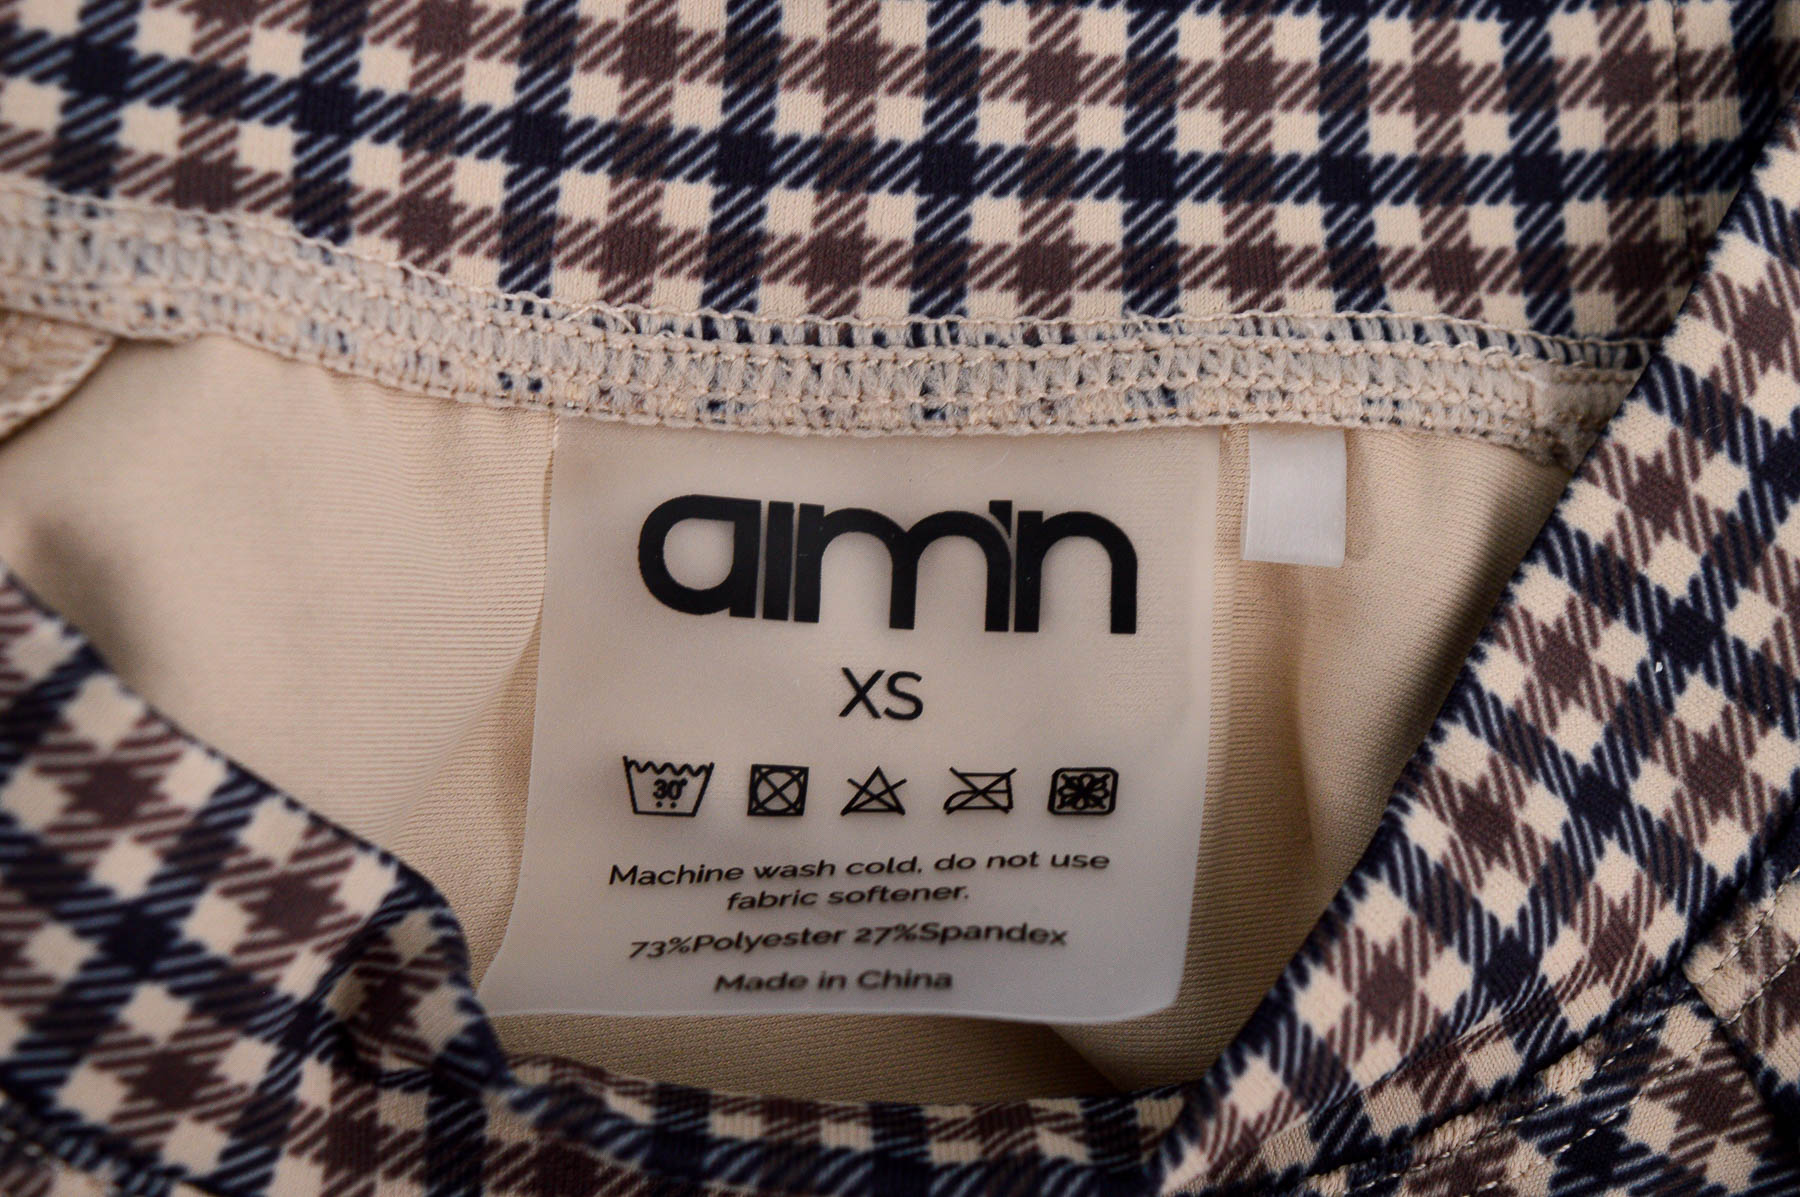 Women's blouse - Aim'n - 2